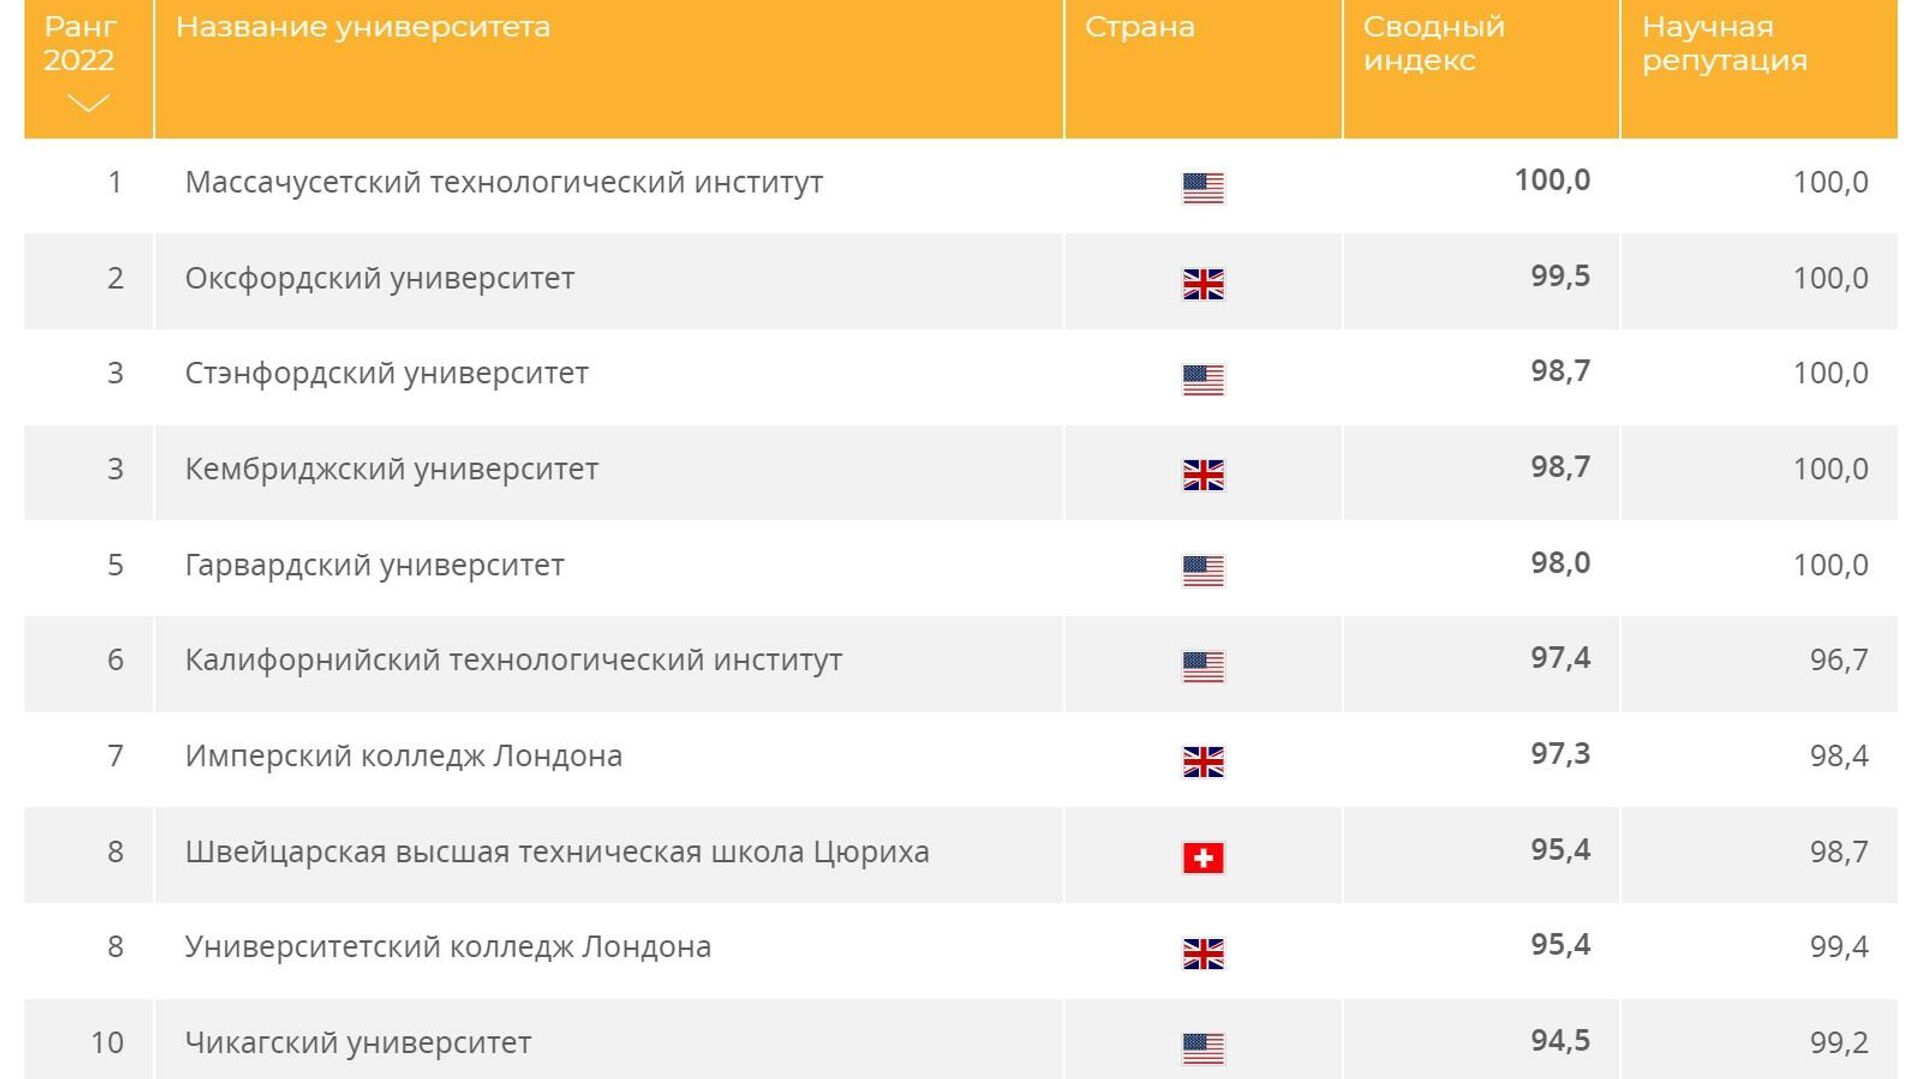 Самый лучший университет страны. Рейтинг лучших российских вузов в 2022.